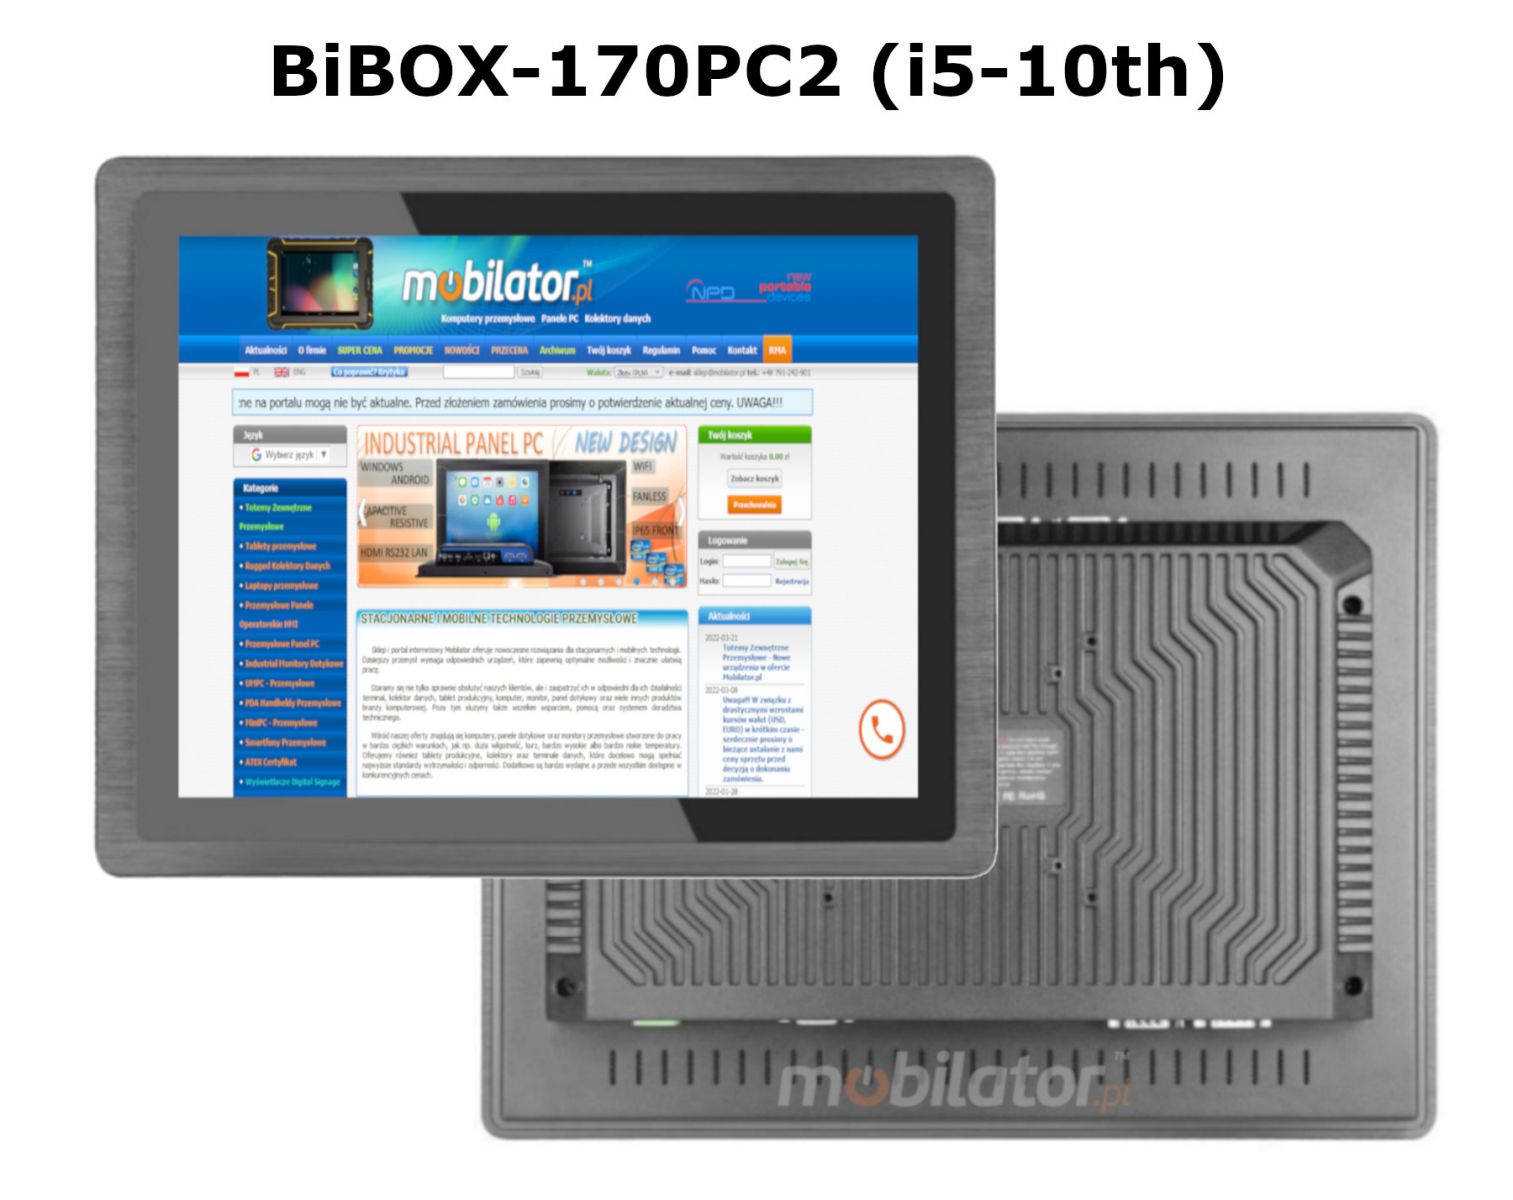 BIBOX-170PC2 odporny dobry wydajny komputer panelowy